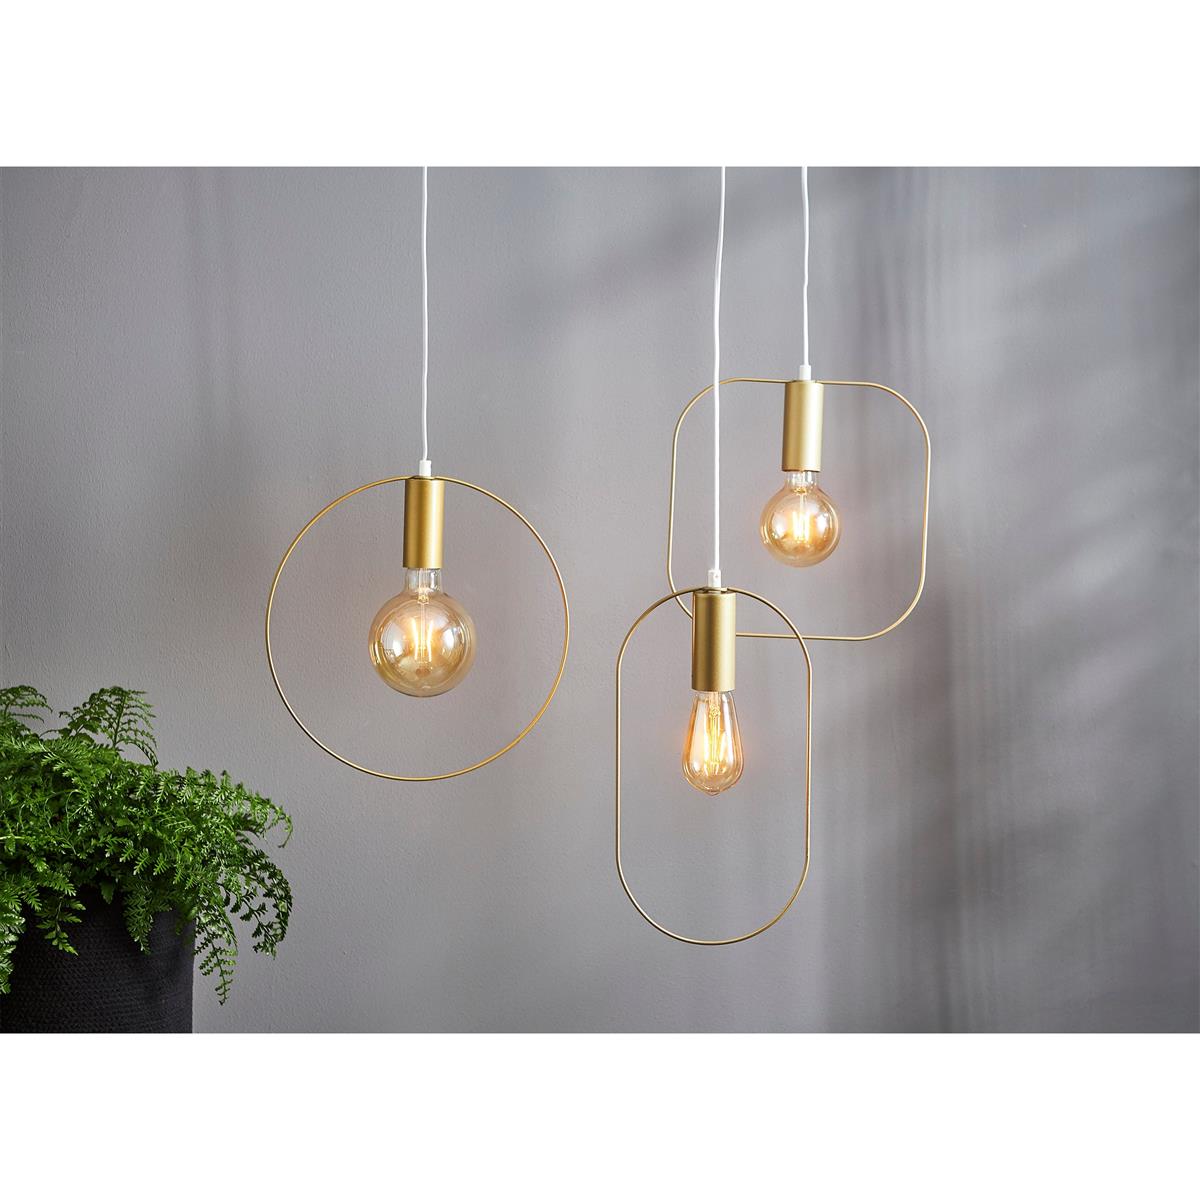 LED-Lampe ''Vintage Gold'', E27, 0,75W,  2000K, 80lm, 12x17,8cm, Amber